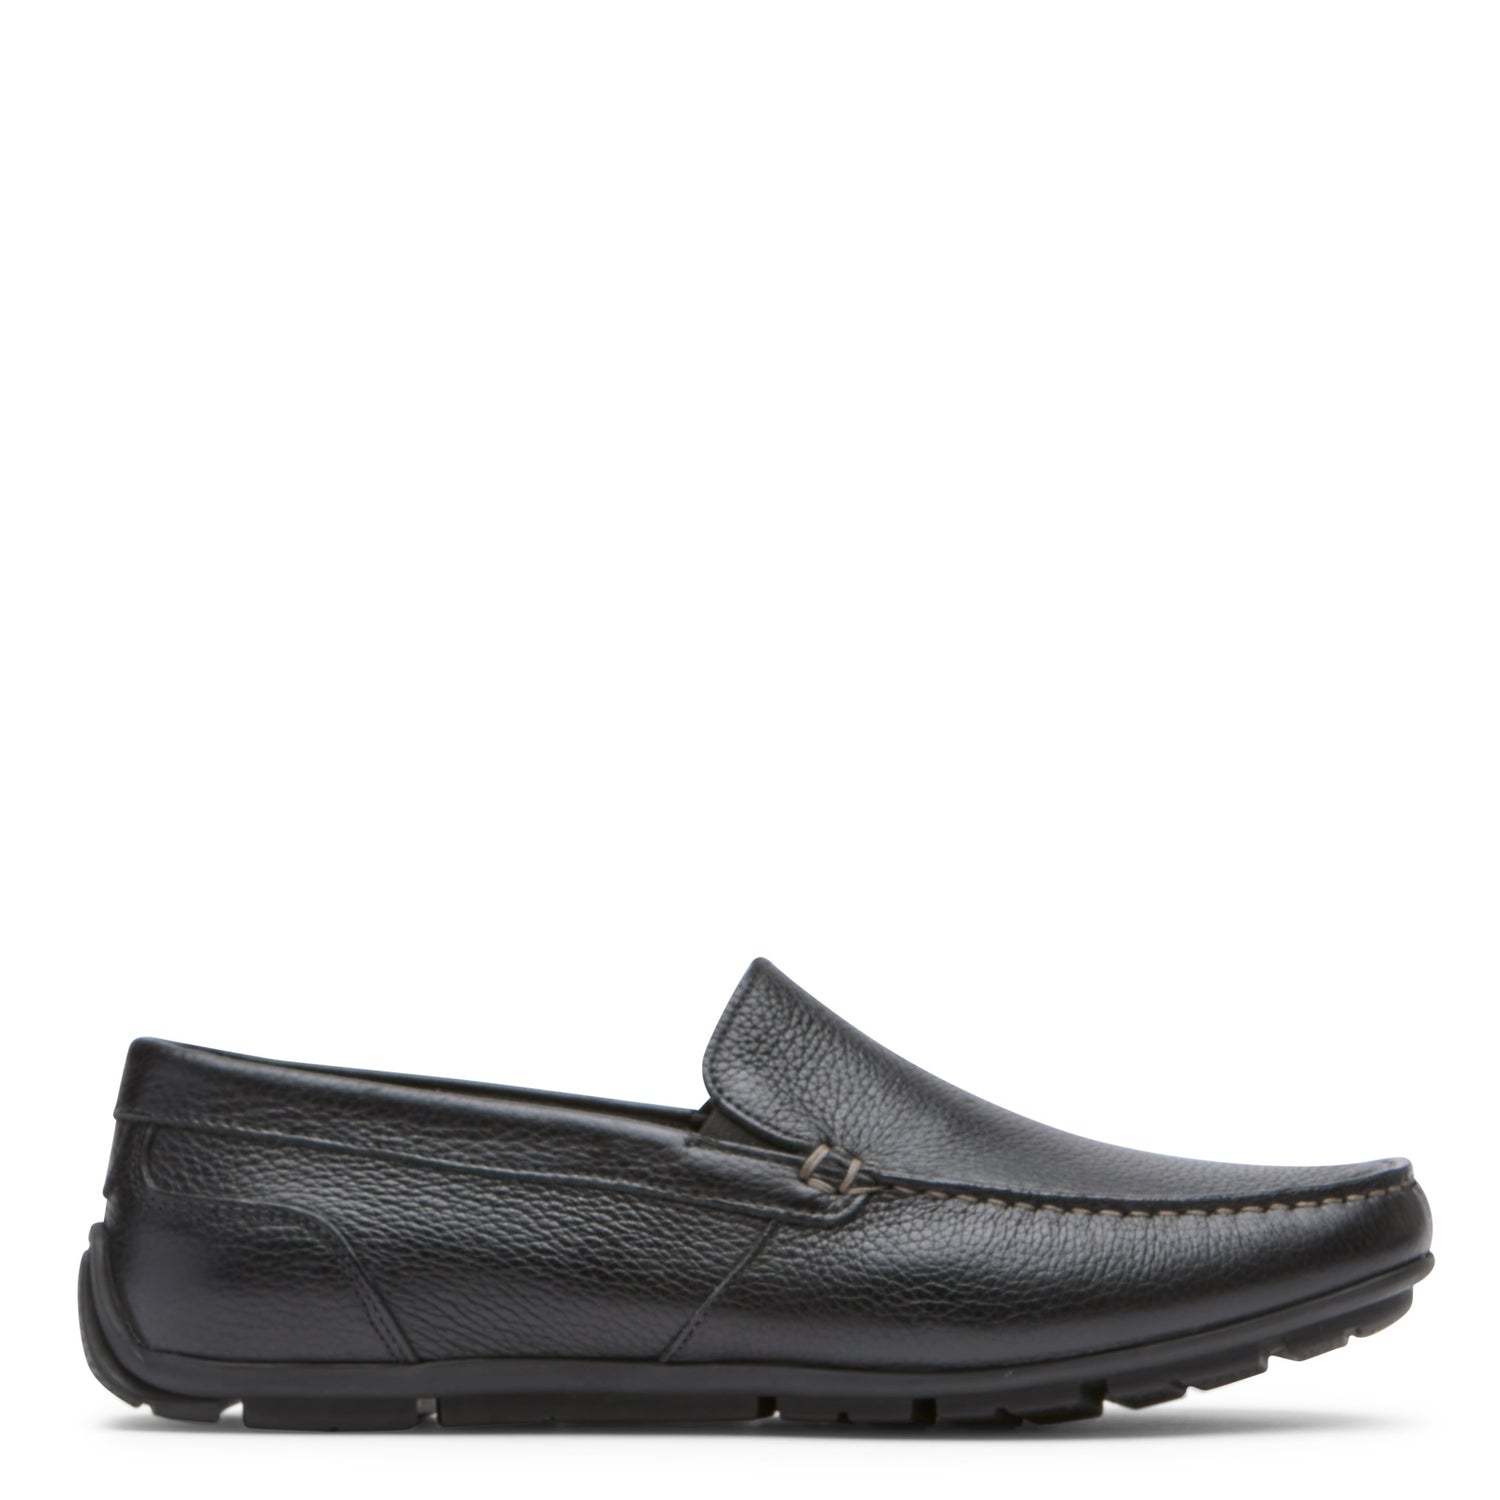 Peltz Shoes  Men's Rockport Warner Venetian Loafer Black CJ1442